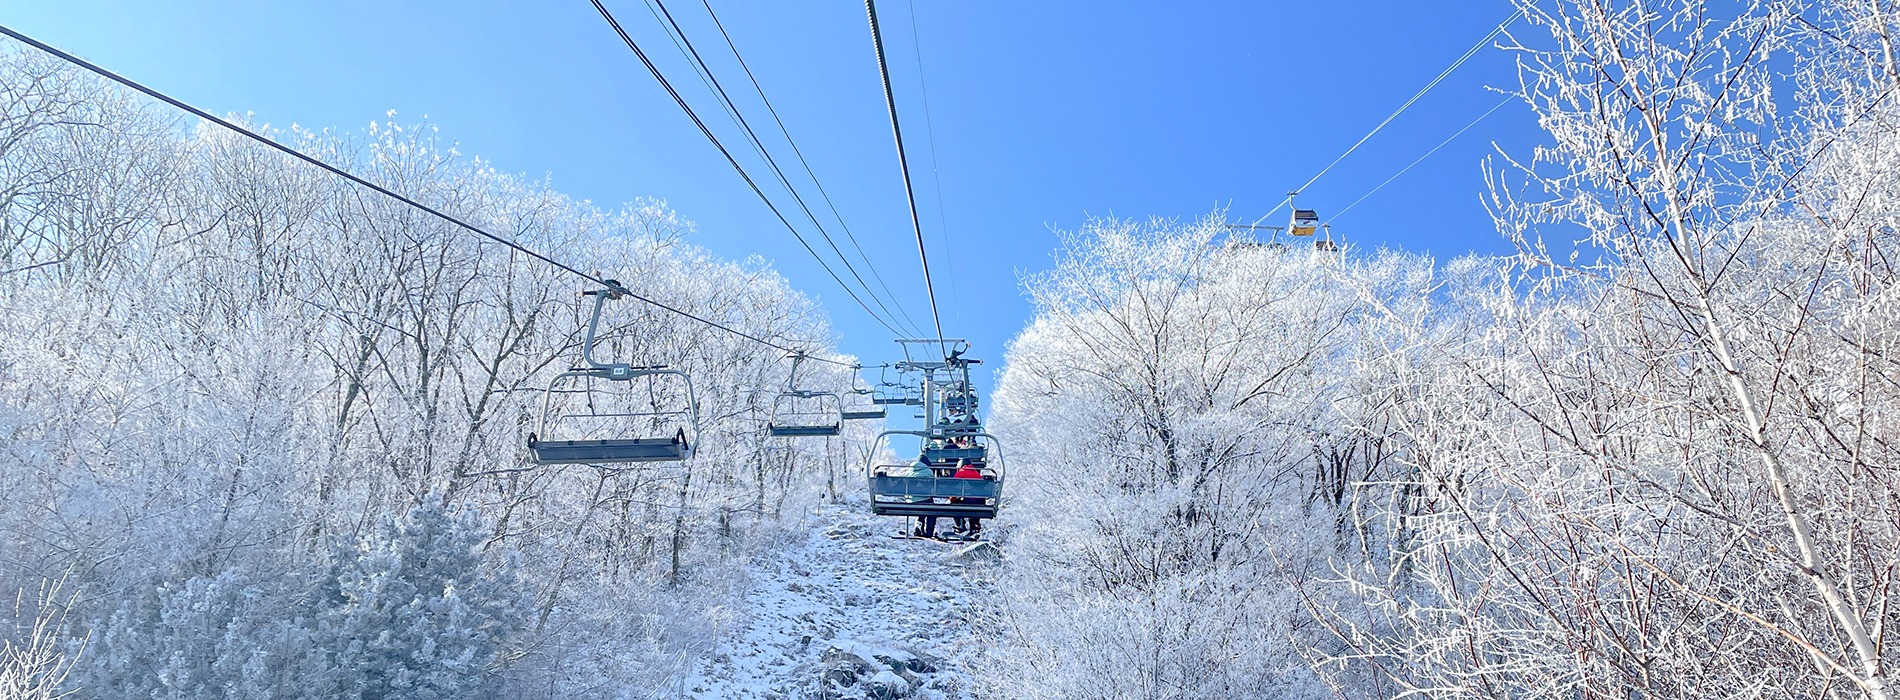 Winter Activities for Visit Korea Year 2023-2024